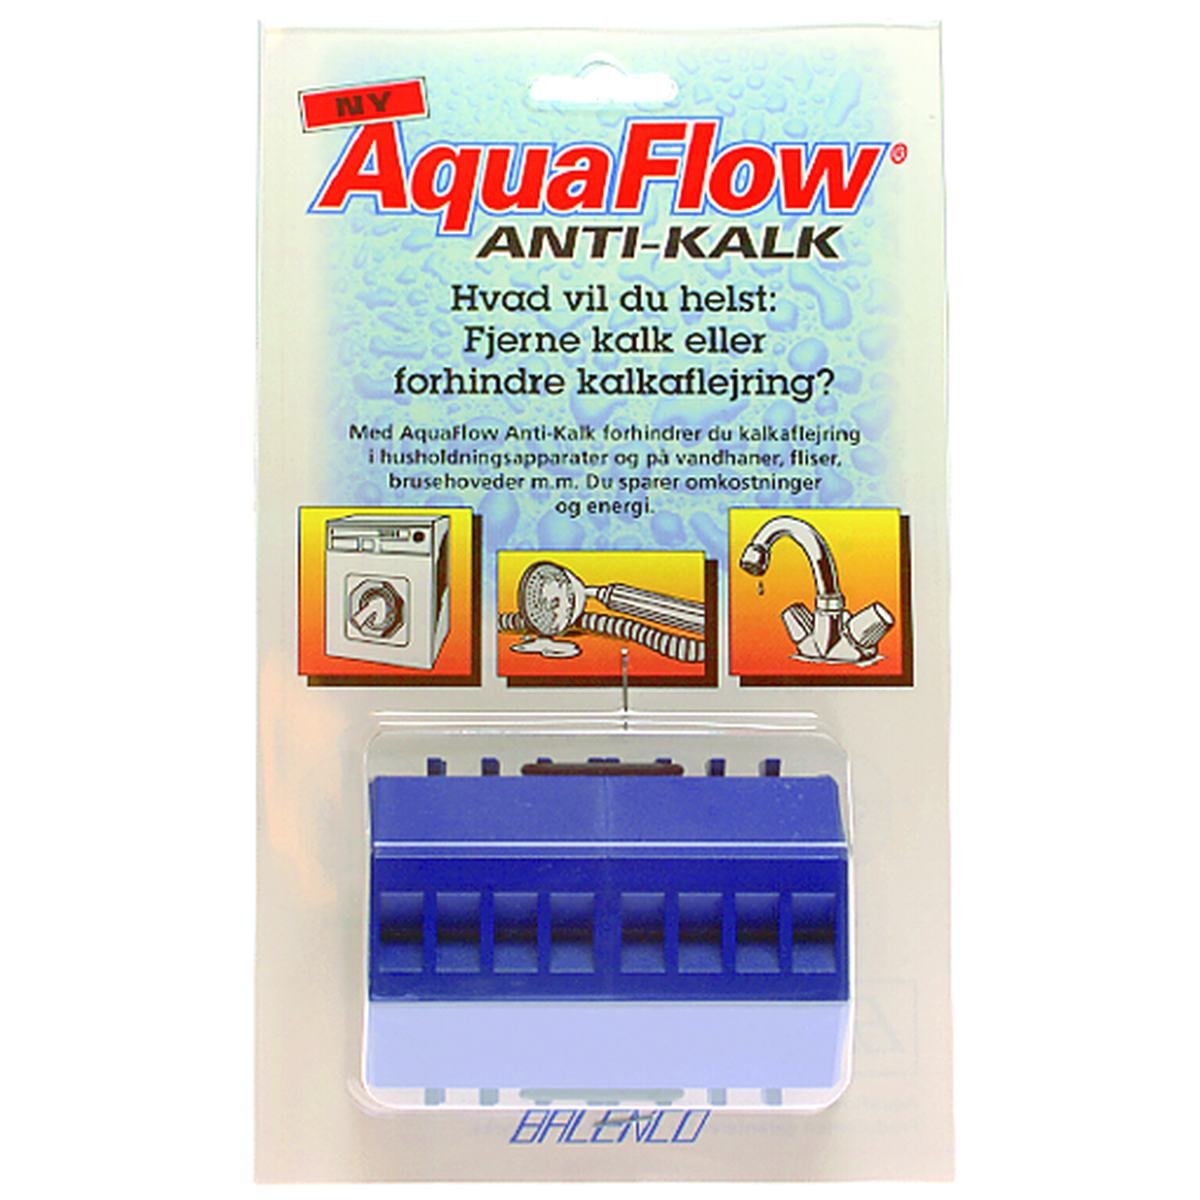 Magnetisk avkalkare - AquaFlow